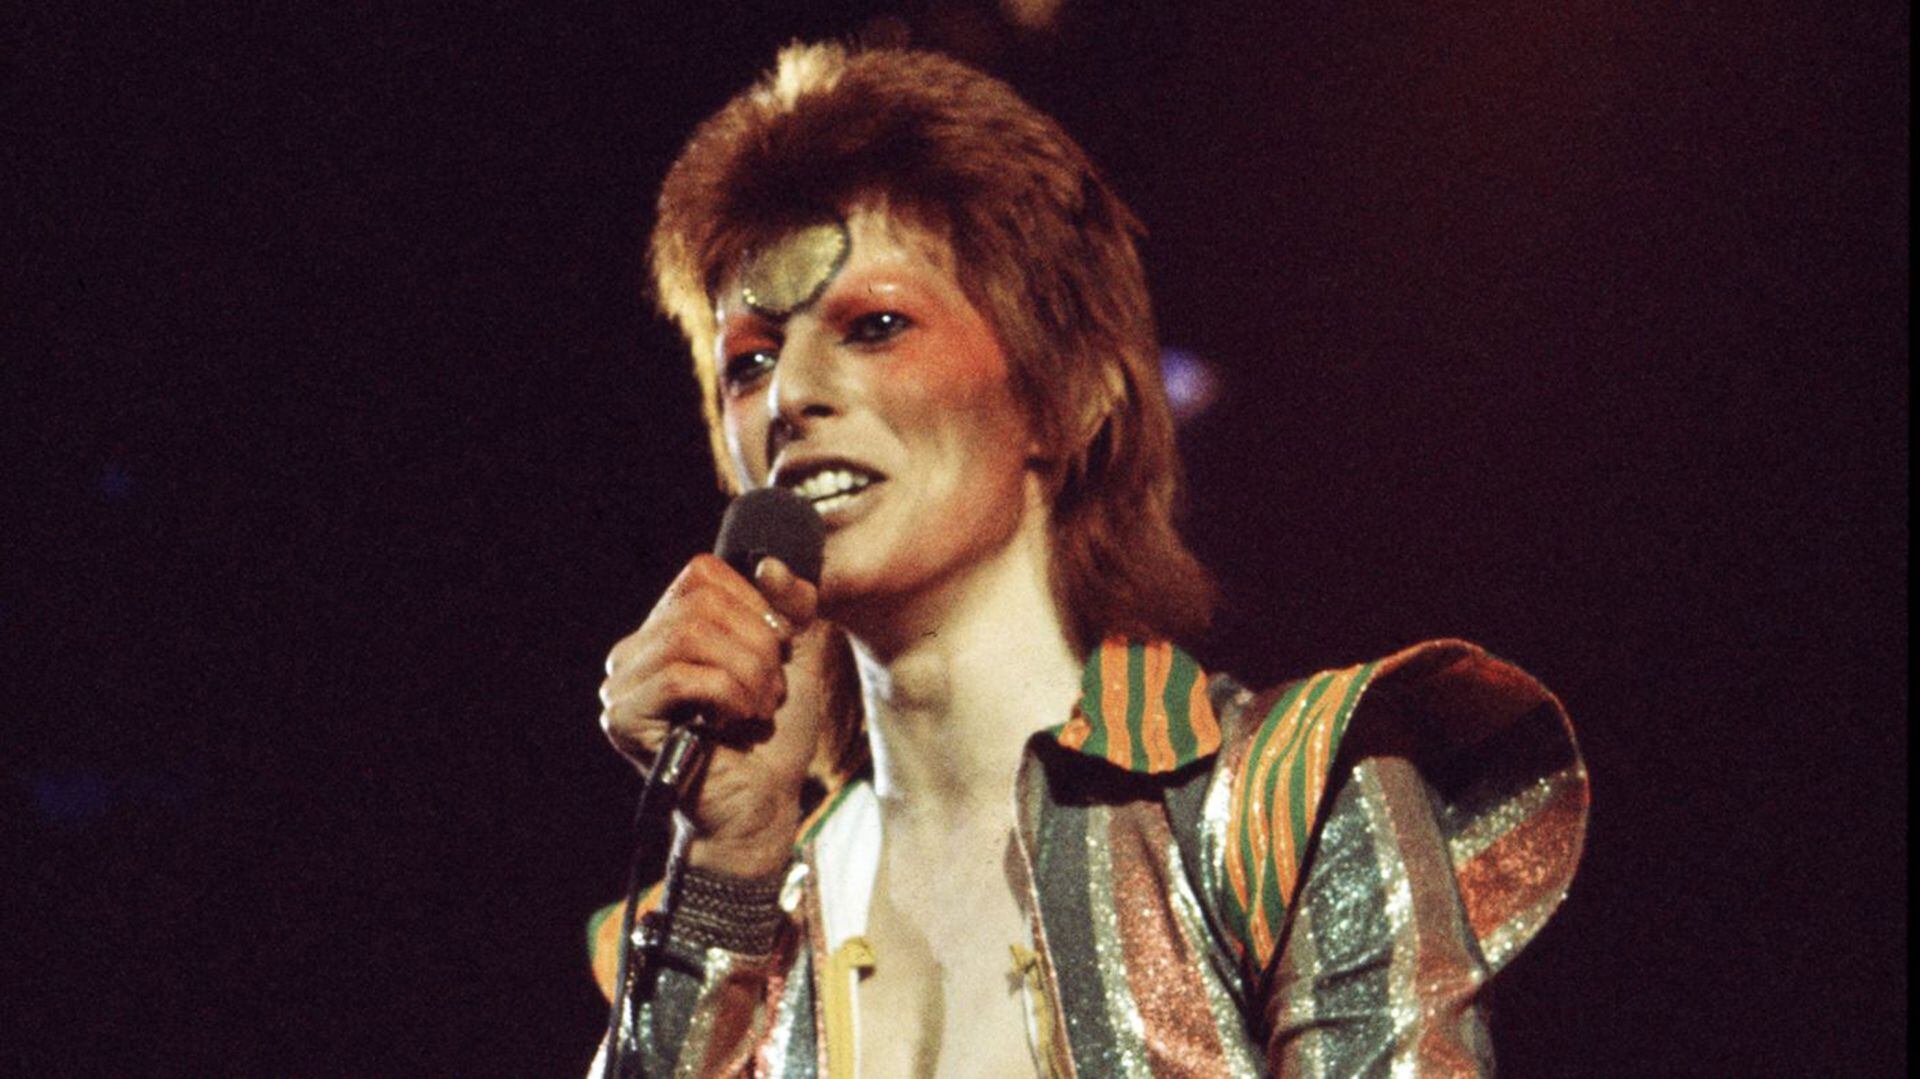 David Bowie en la piel de Ziggy Stardust, uno de sus alteregos. Sus innovaciones no sólo fueron musicales